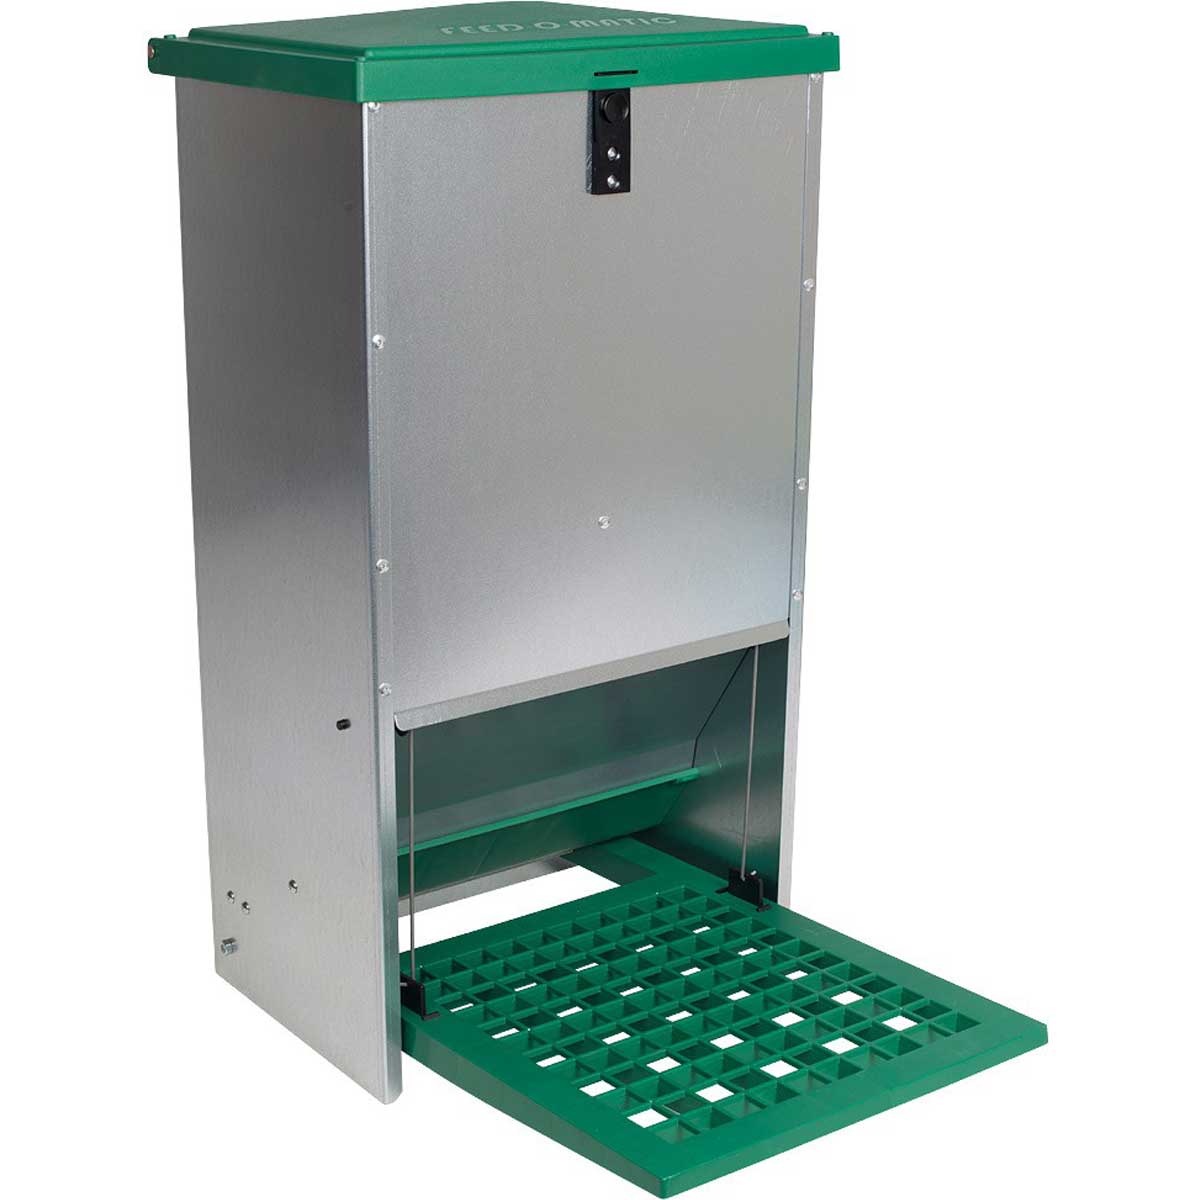 Feedomatic Geflügelfutterautomat mit Trittklappe 20 kg